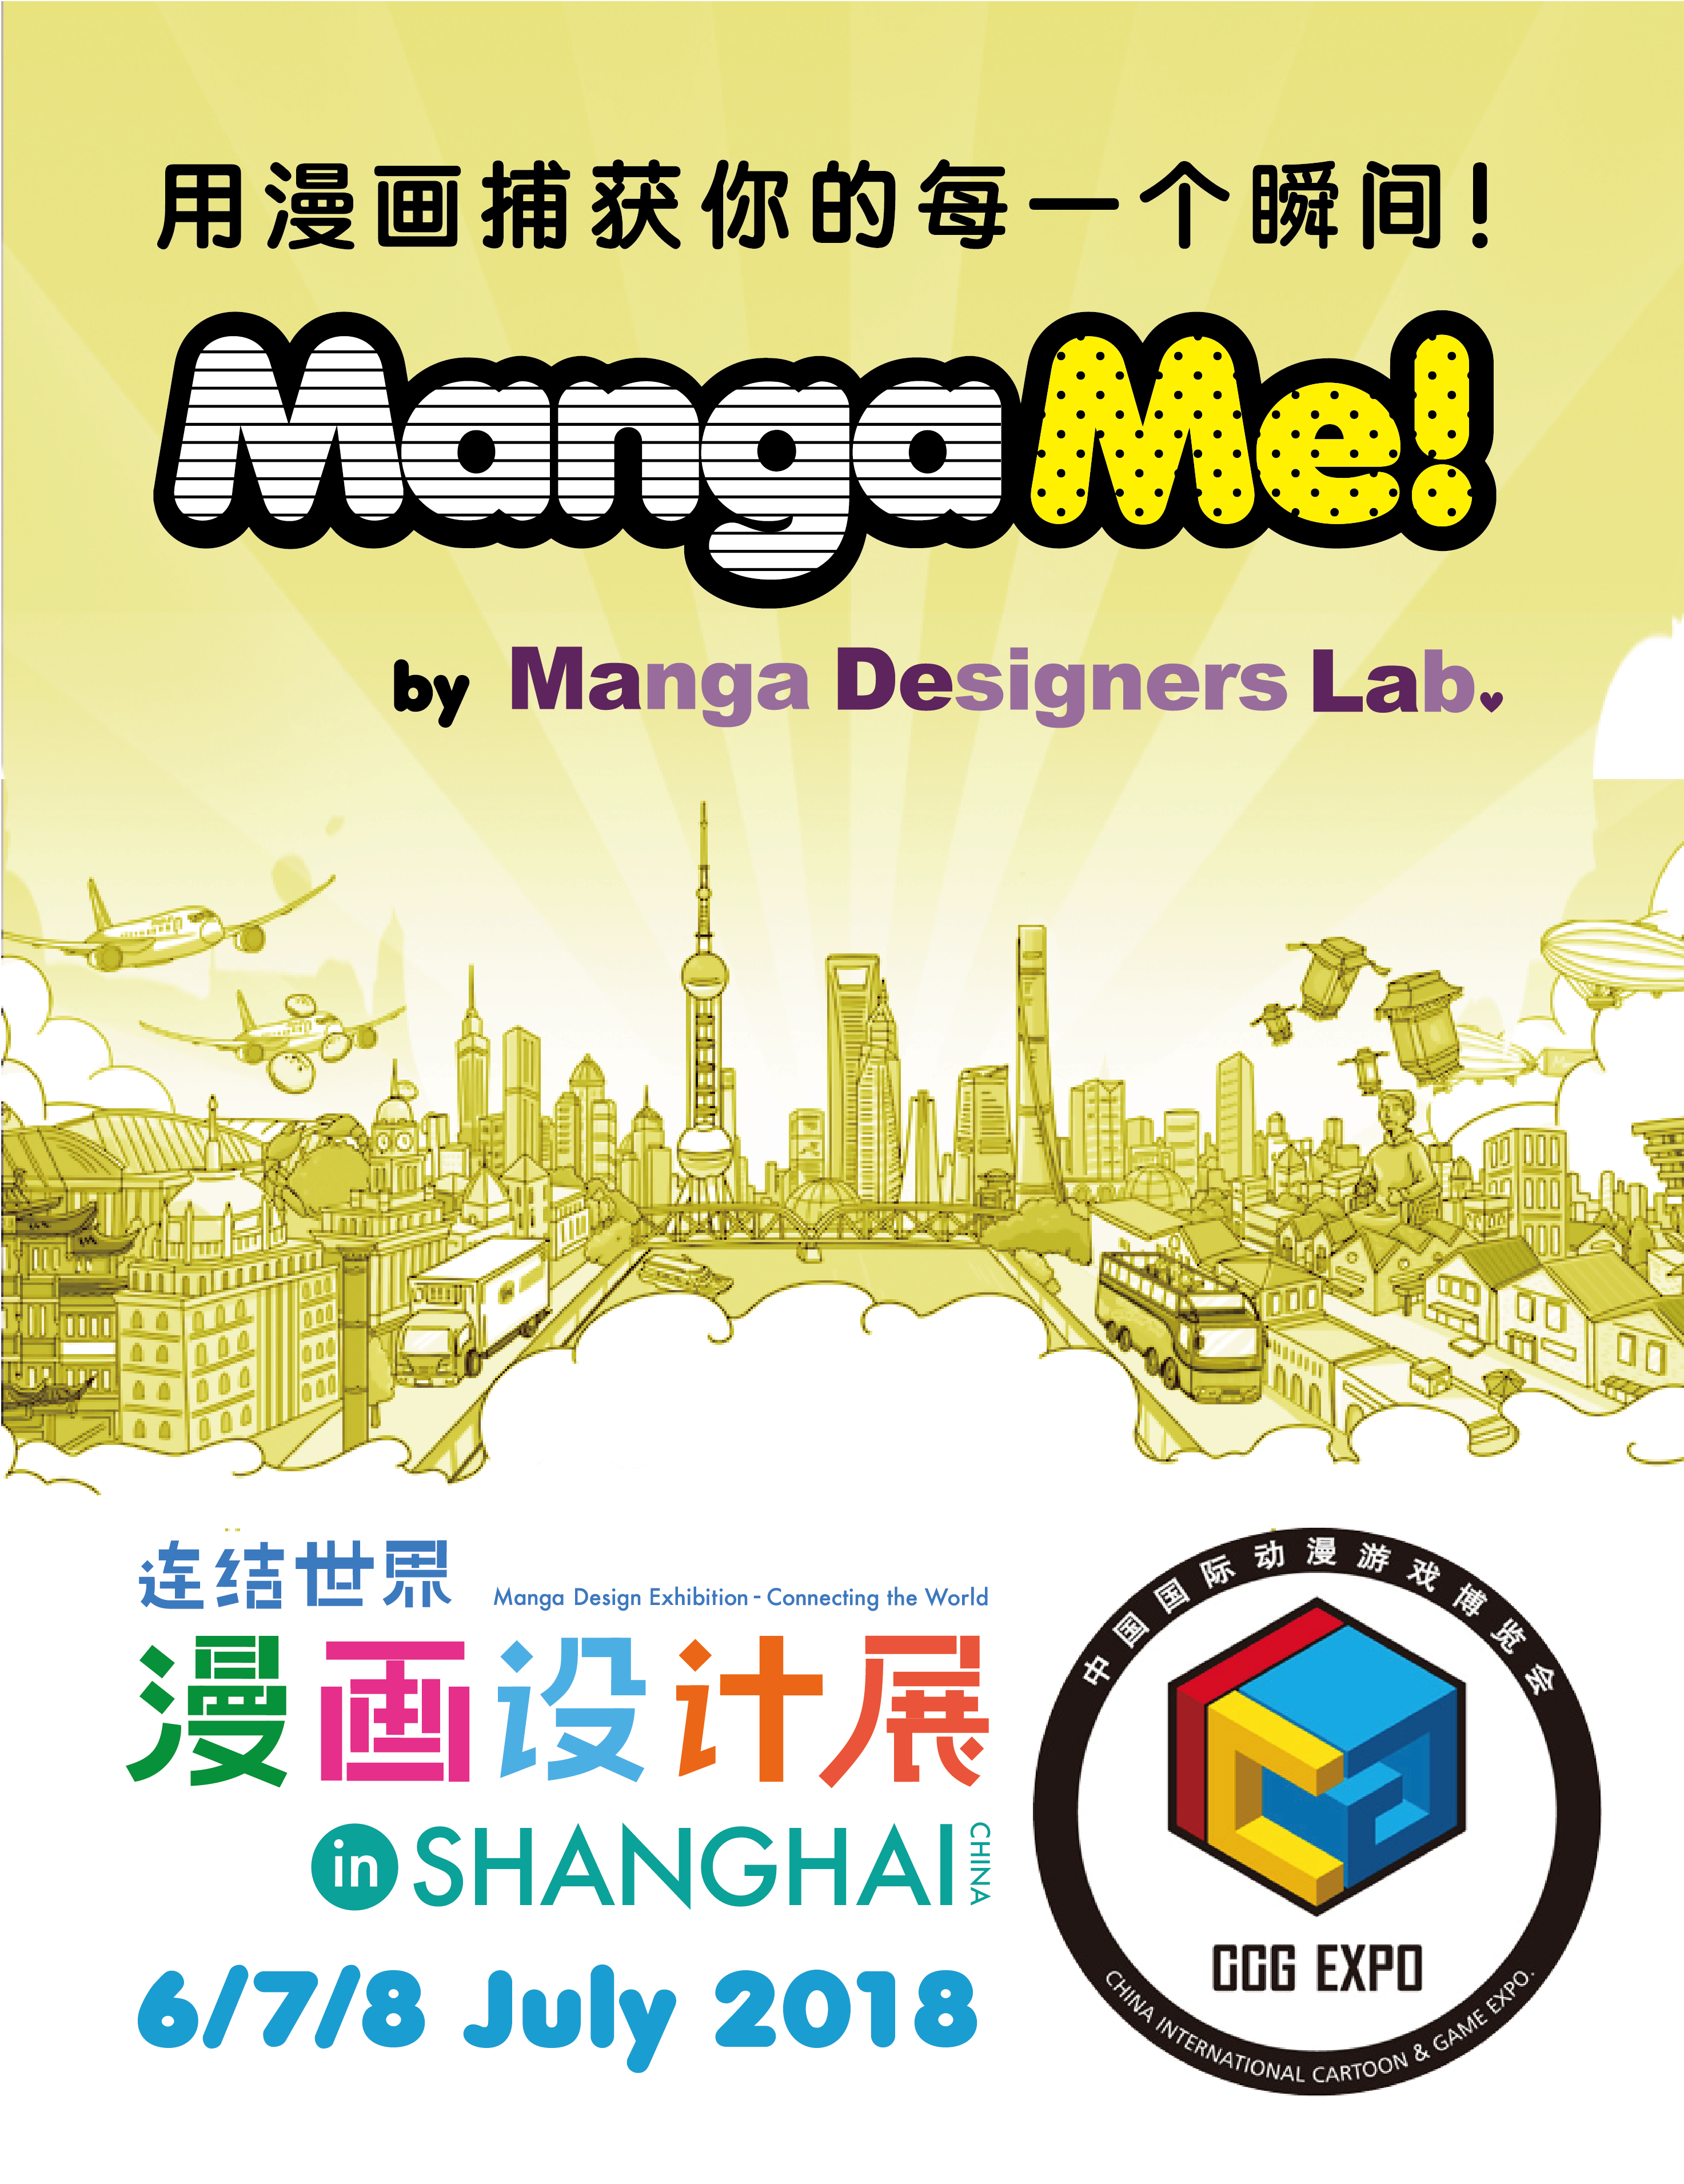 Manga Design Exhibition in Shanghai